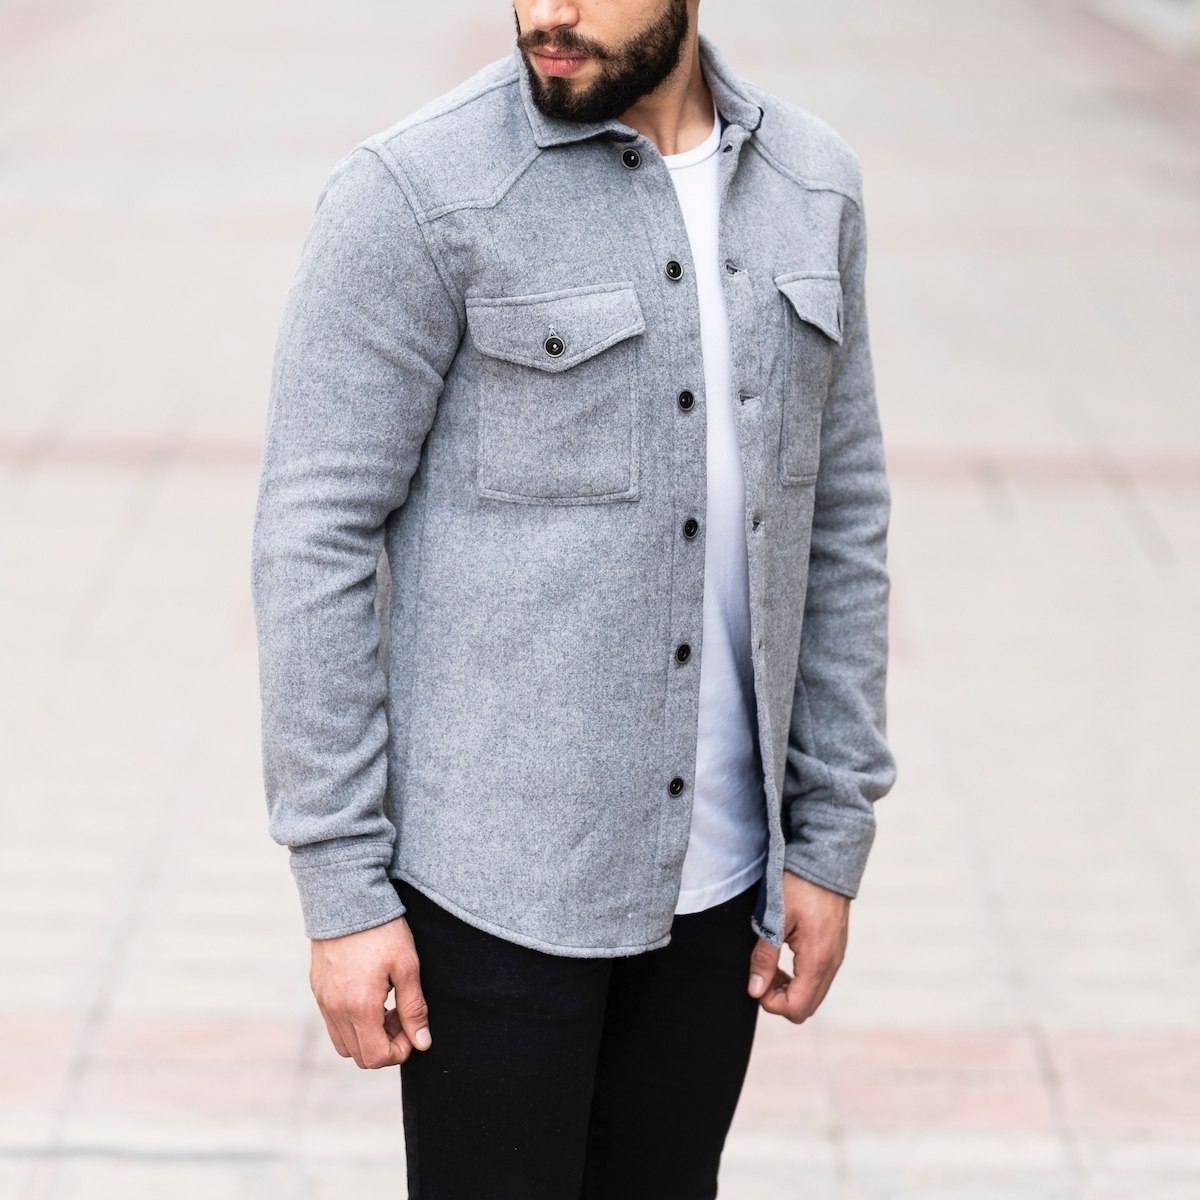 Herren Hemd-Jacke aus Wolle in grau | Martin Valen